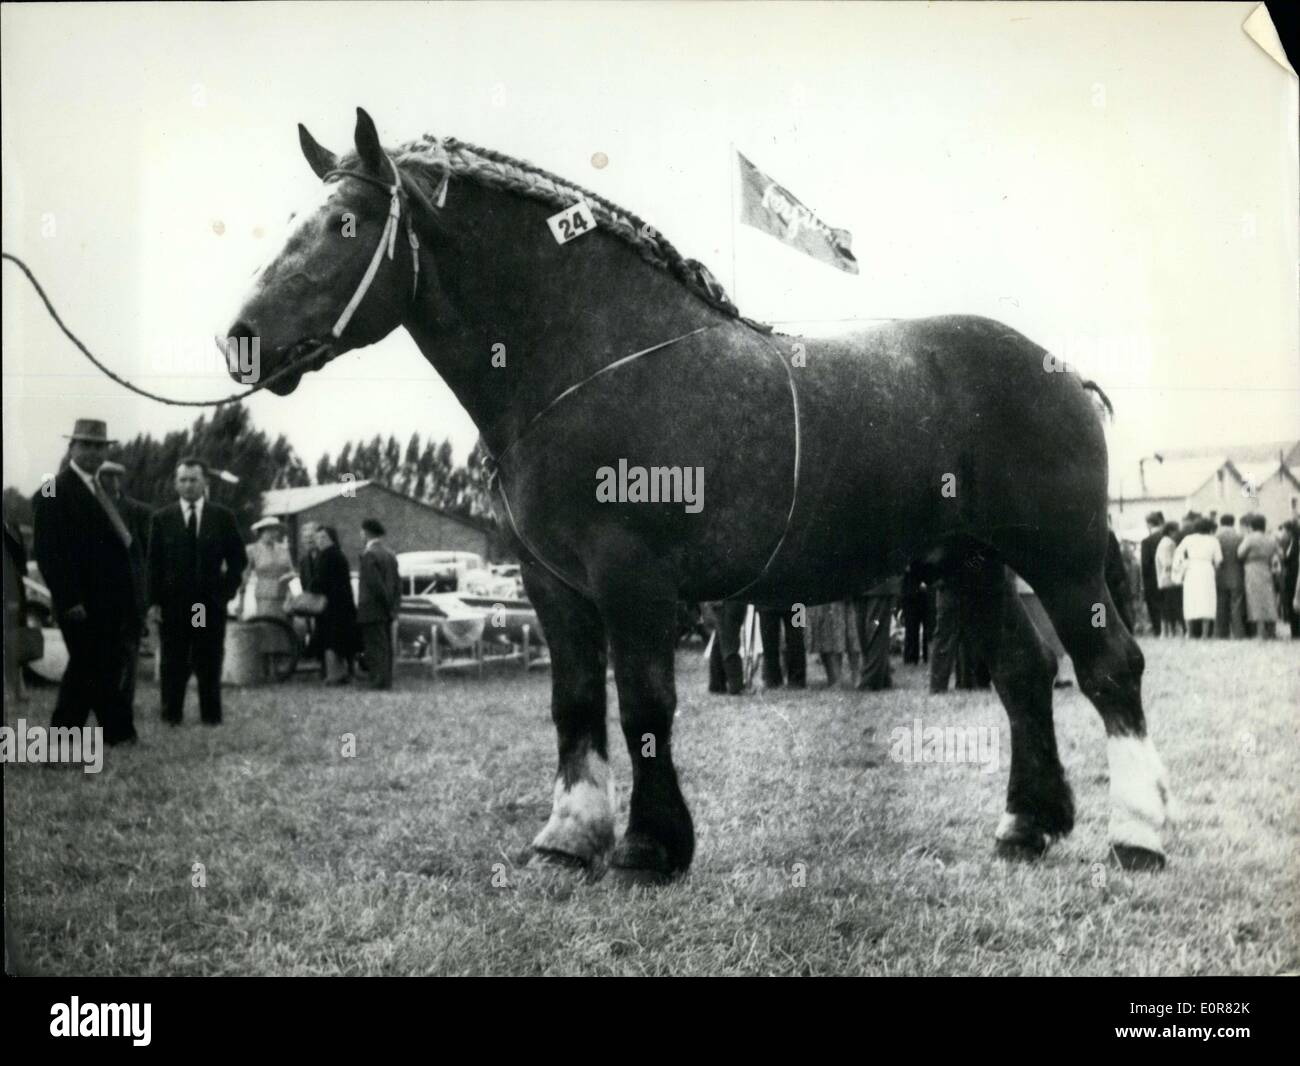 Lug. 29, 1958 - Campione di cavalli da corsa Foto Stock